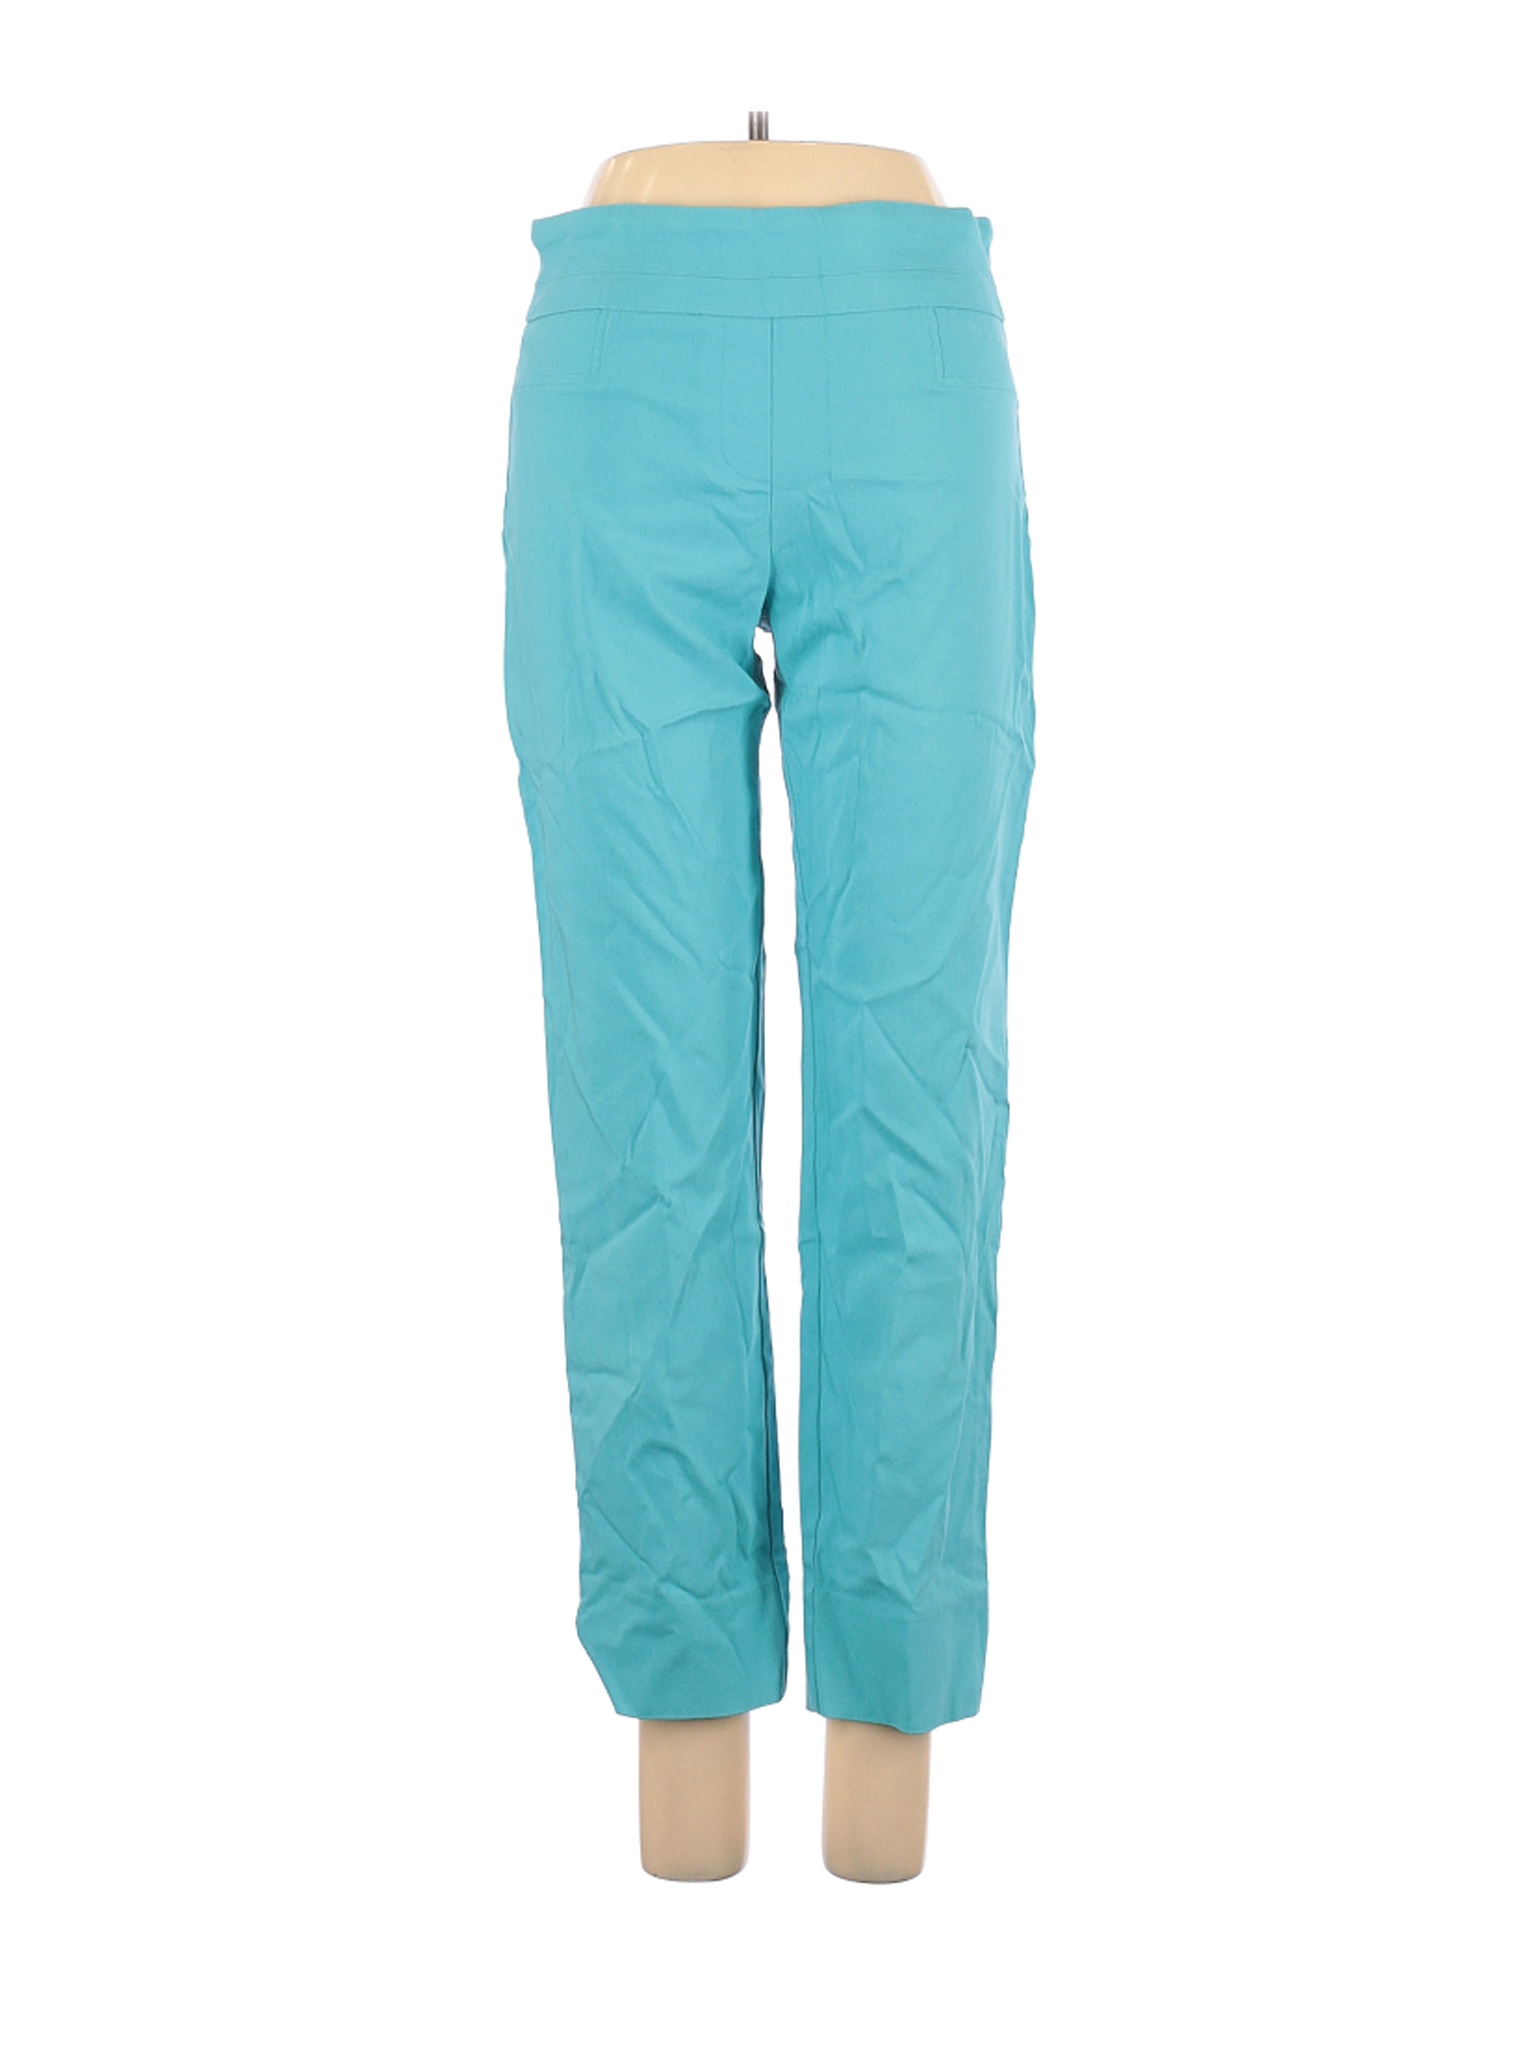 Renuar Women Blue Casual Pants 2 | eBay